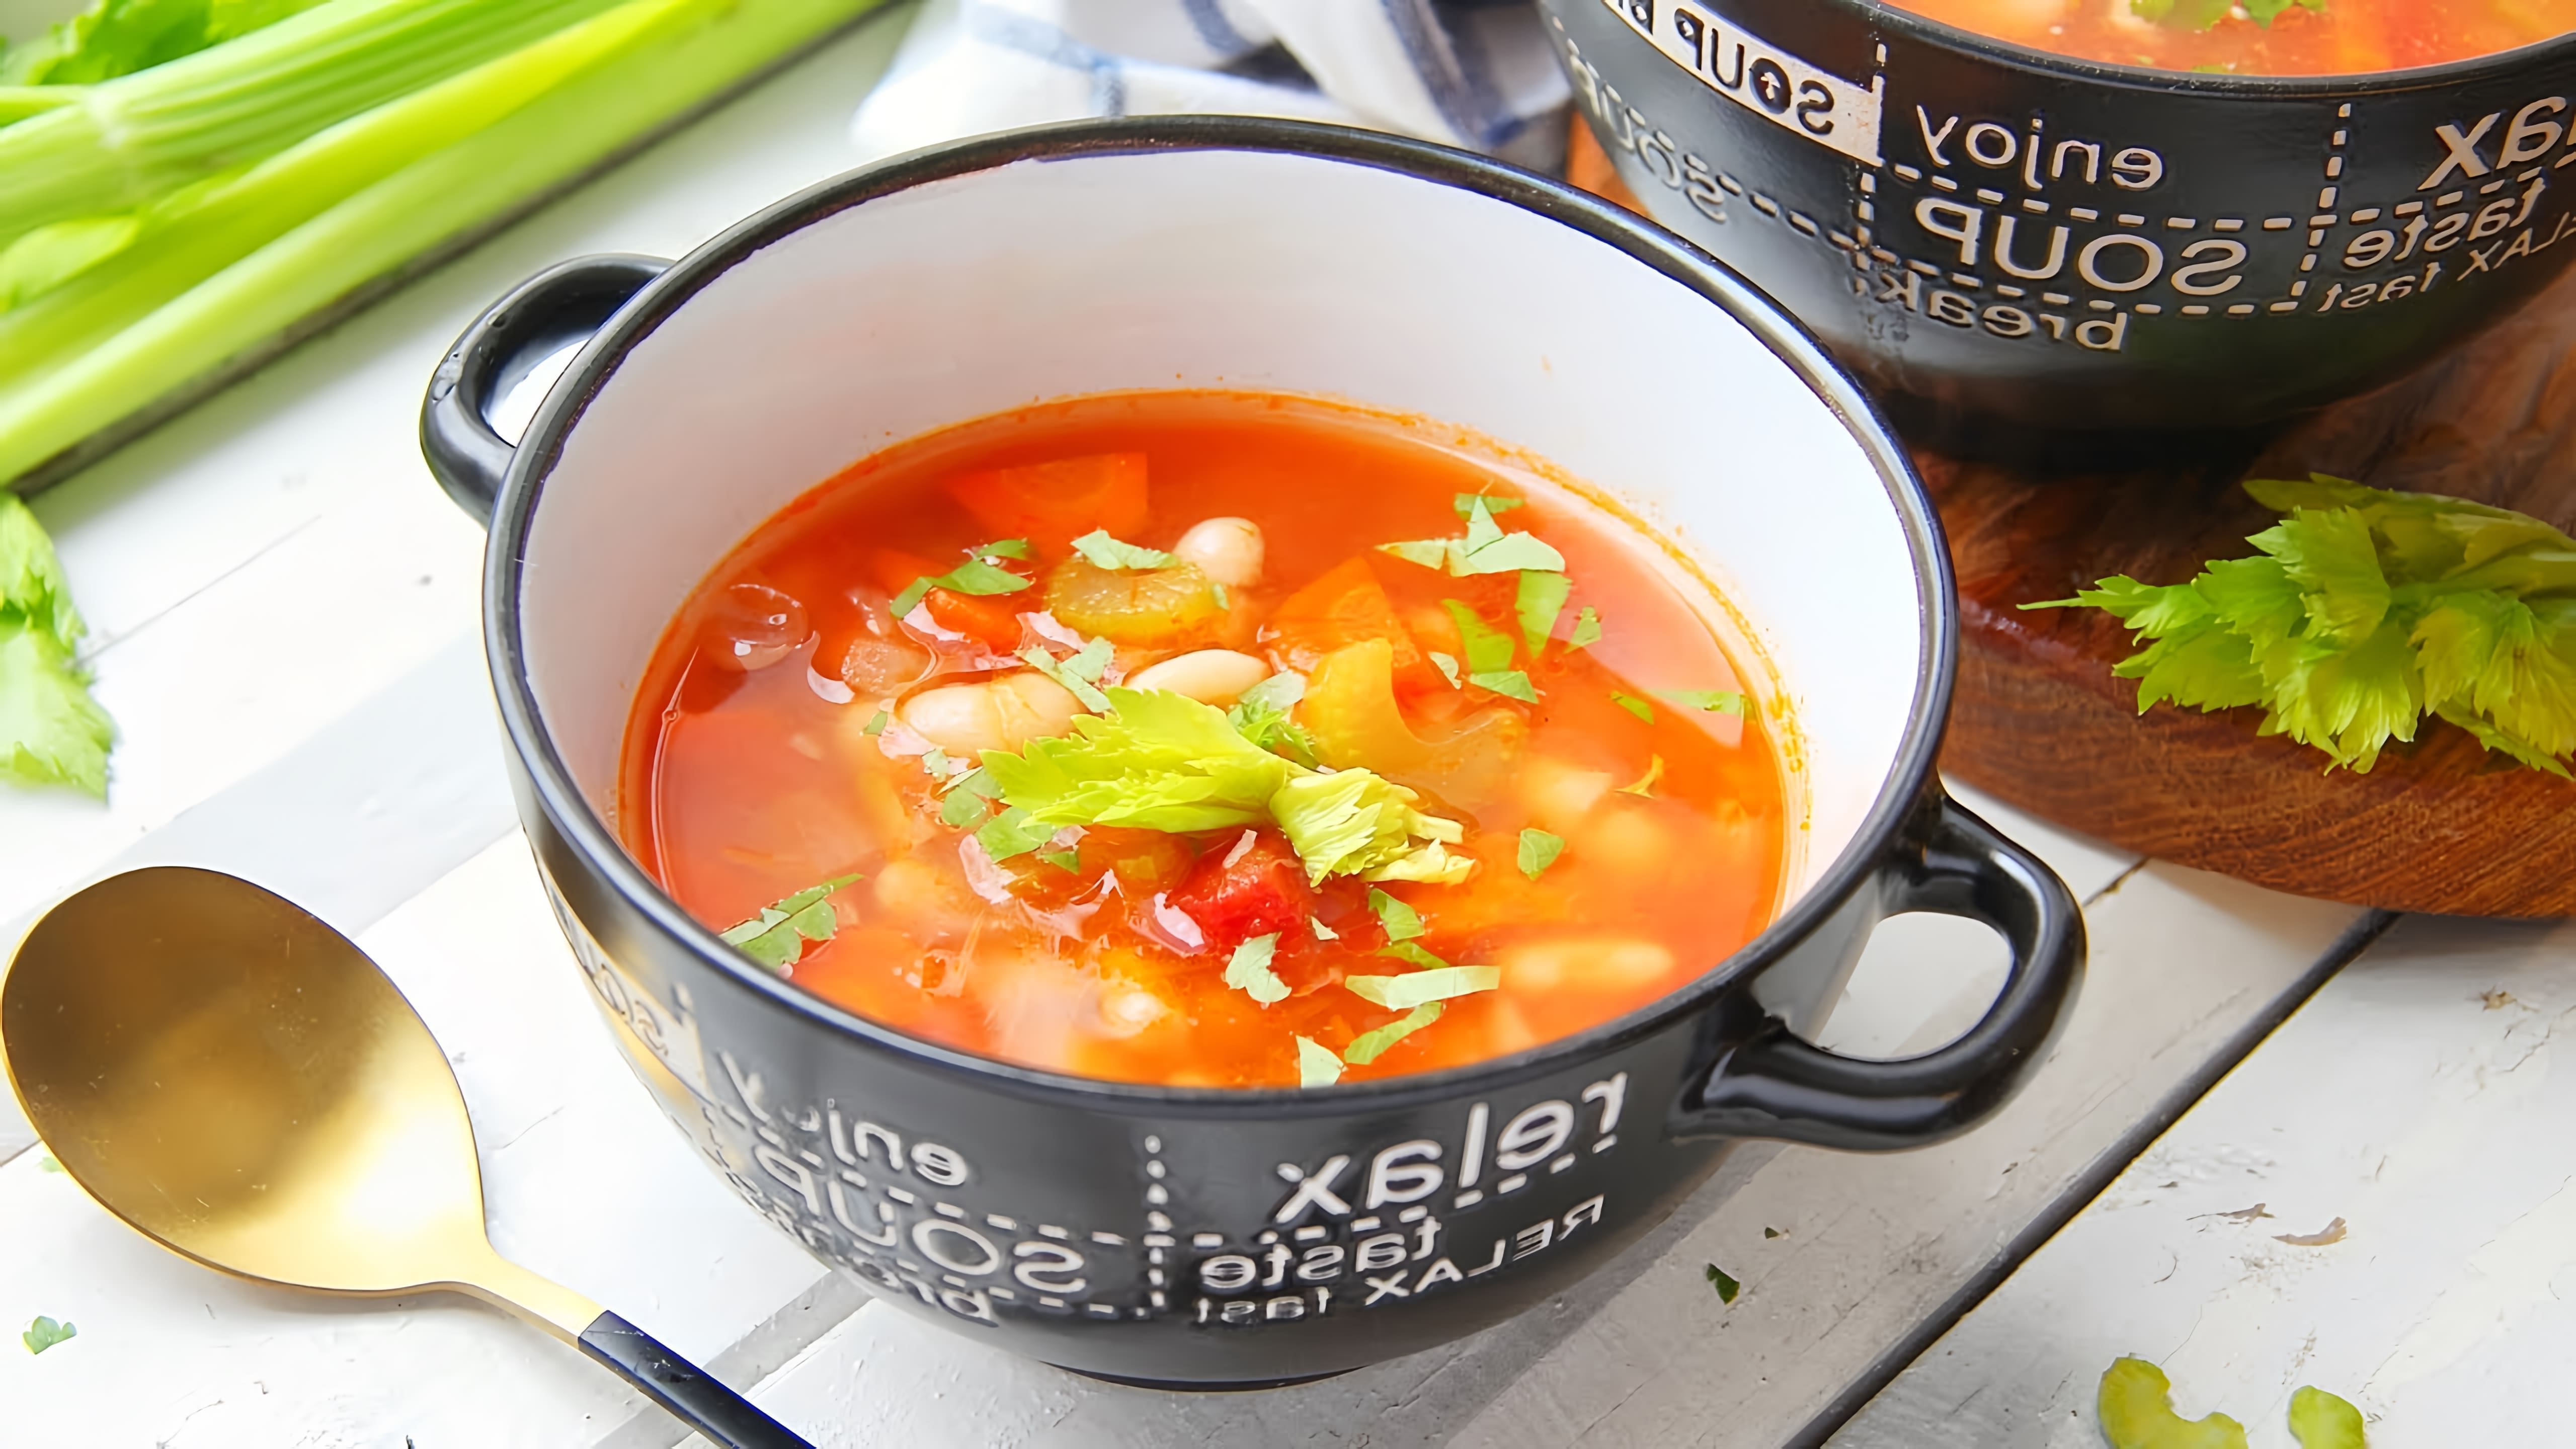 В этом видео-ролике будет представлен рецепт греческого фасолевого супа с сельдереем и томатами в собственном соку